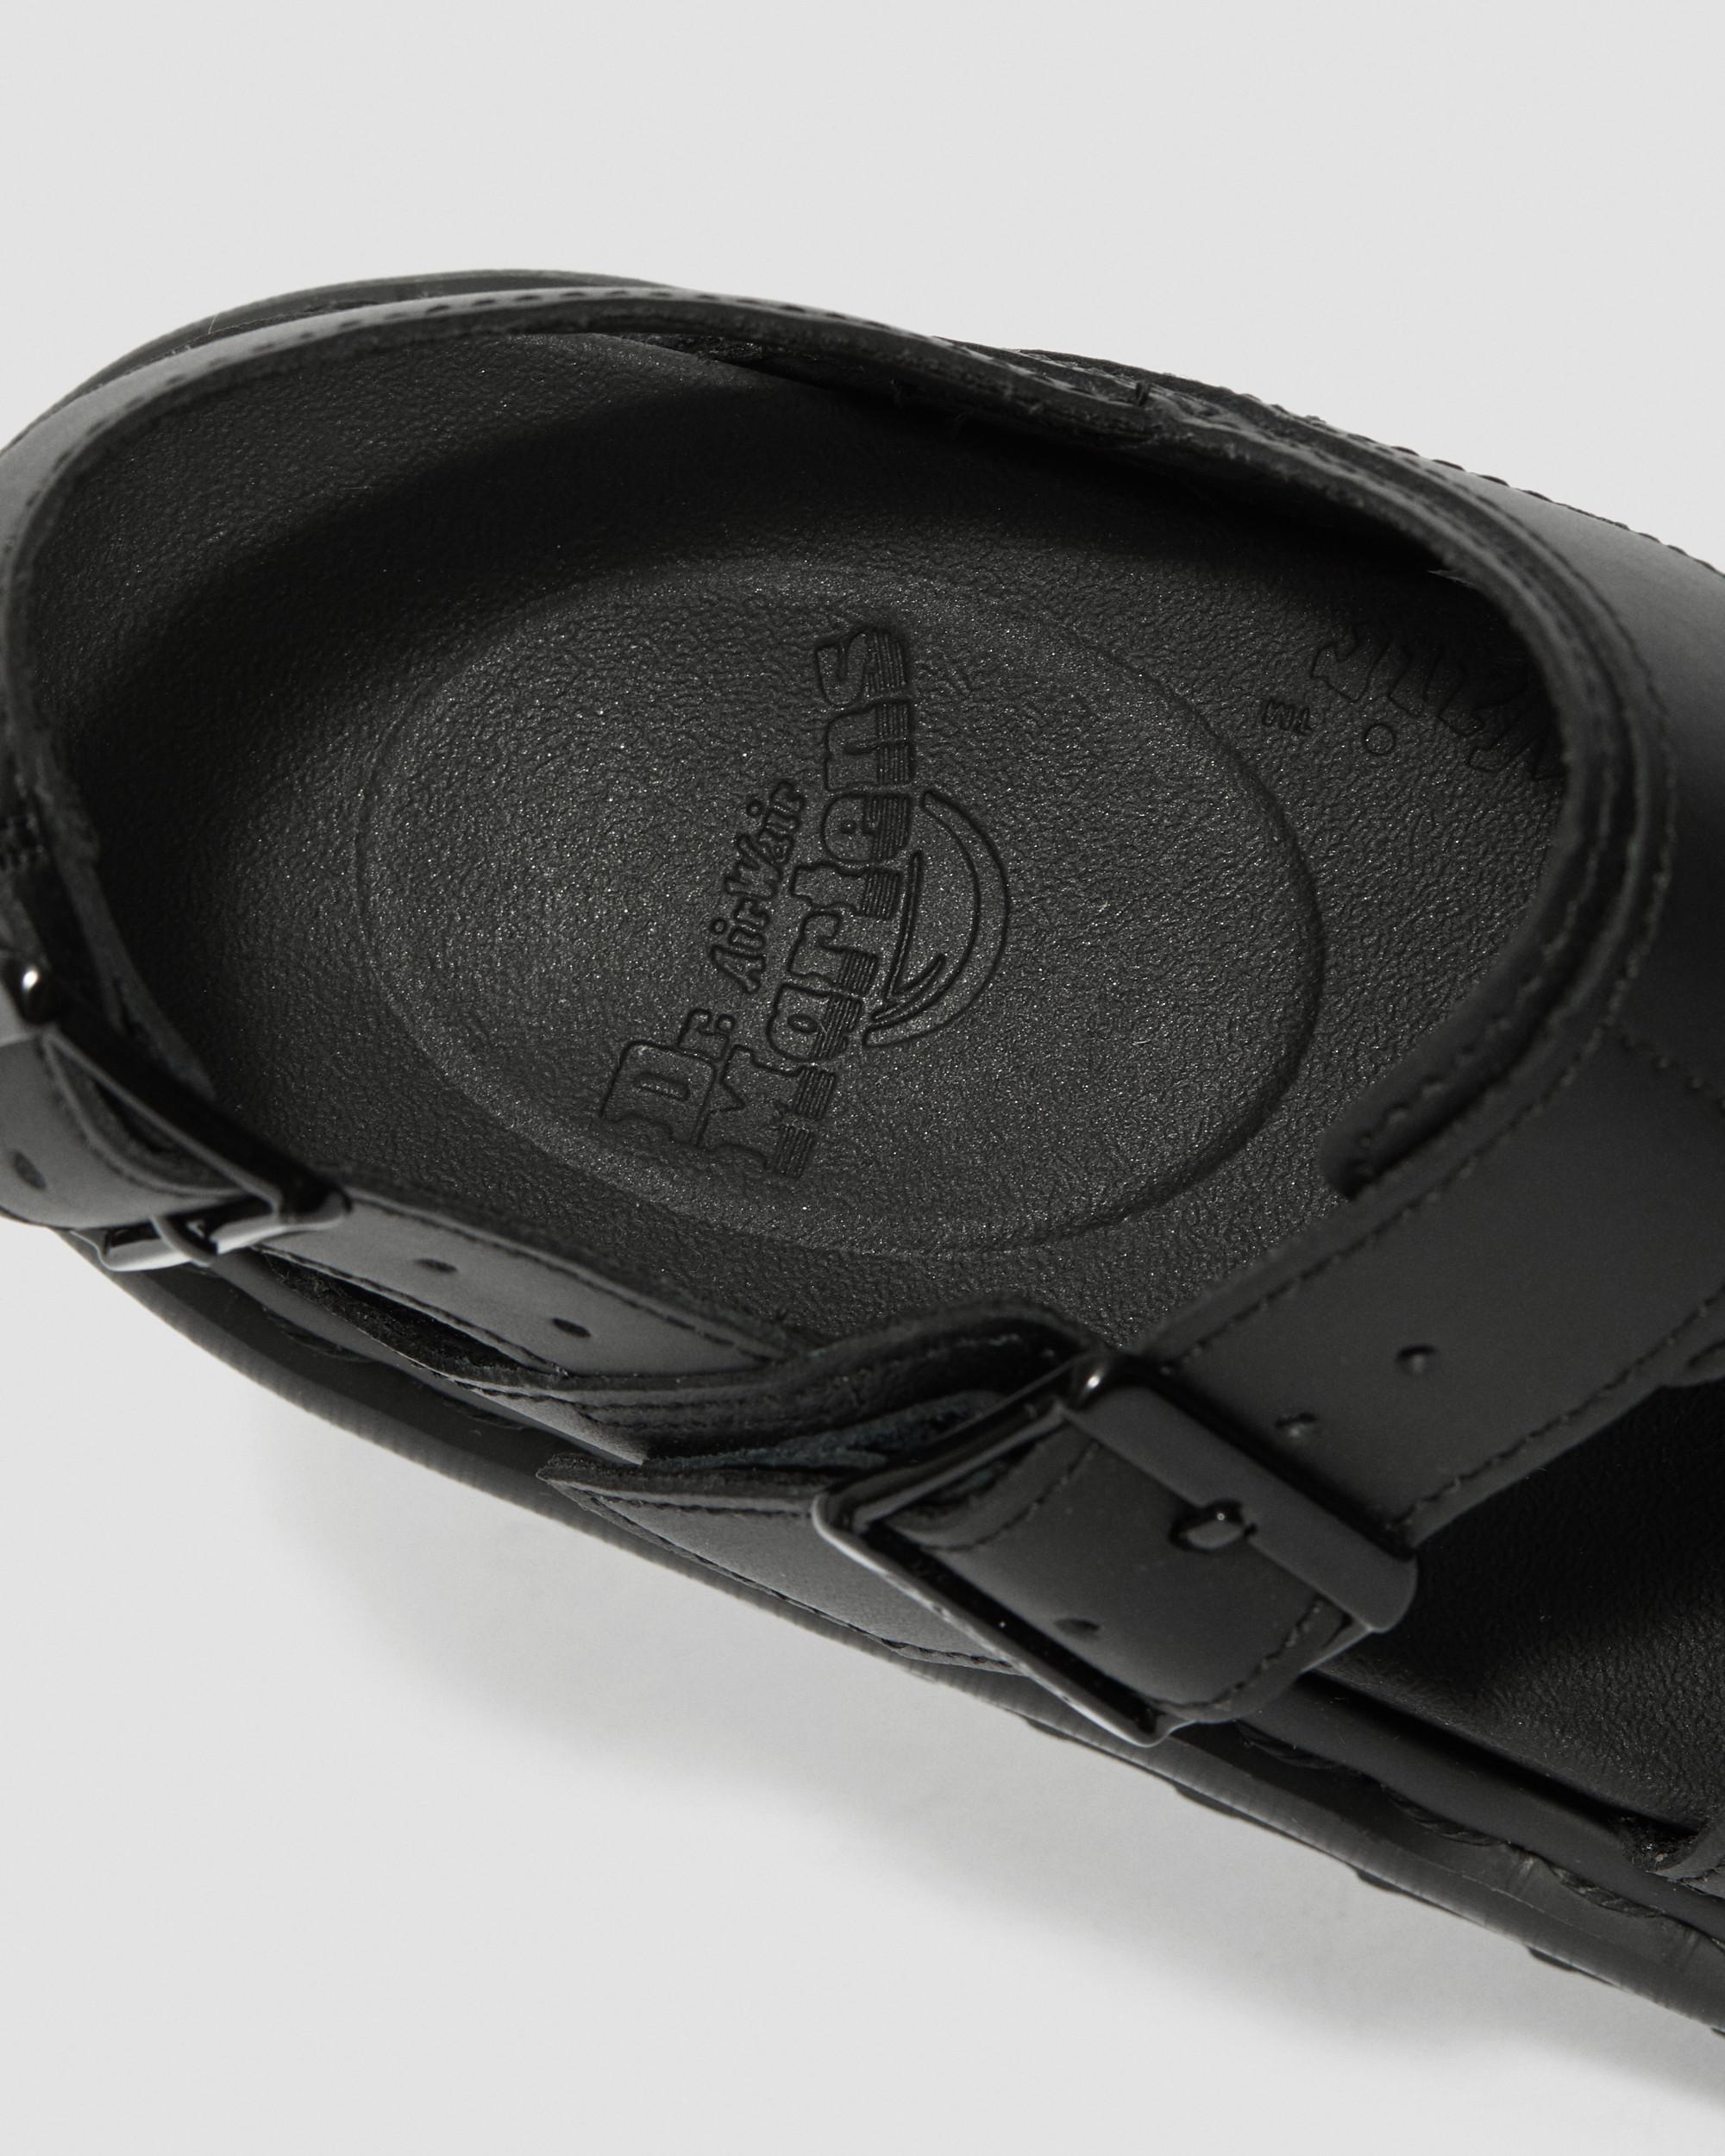 Voss-sandaler i Hydro-læder med remVoss-sandaler i Hydro-læder med rem Dr. Martens